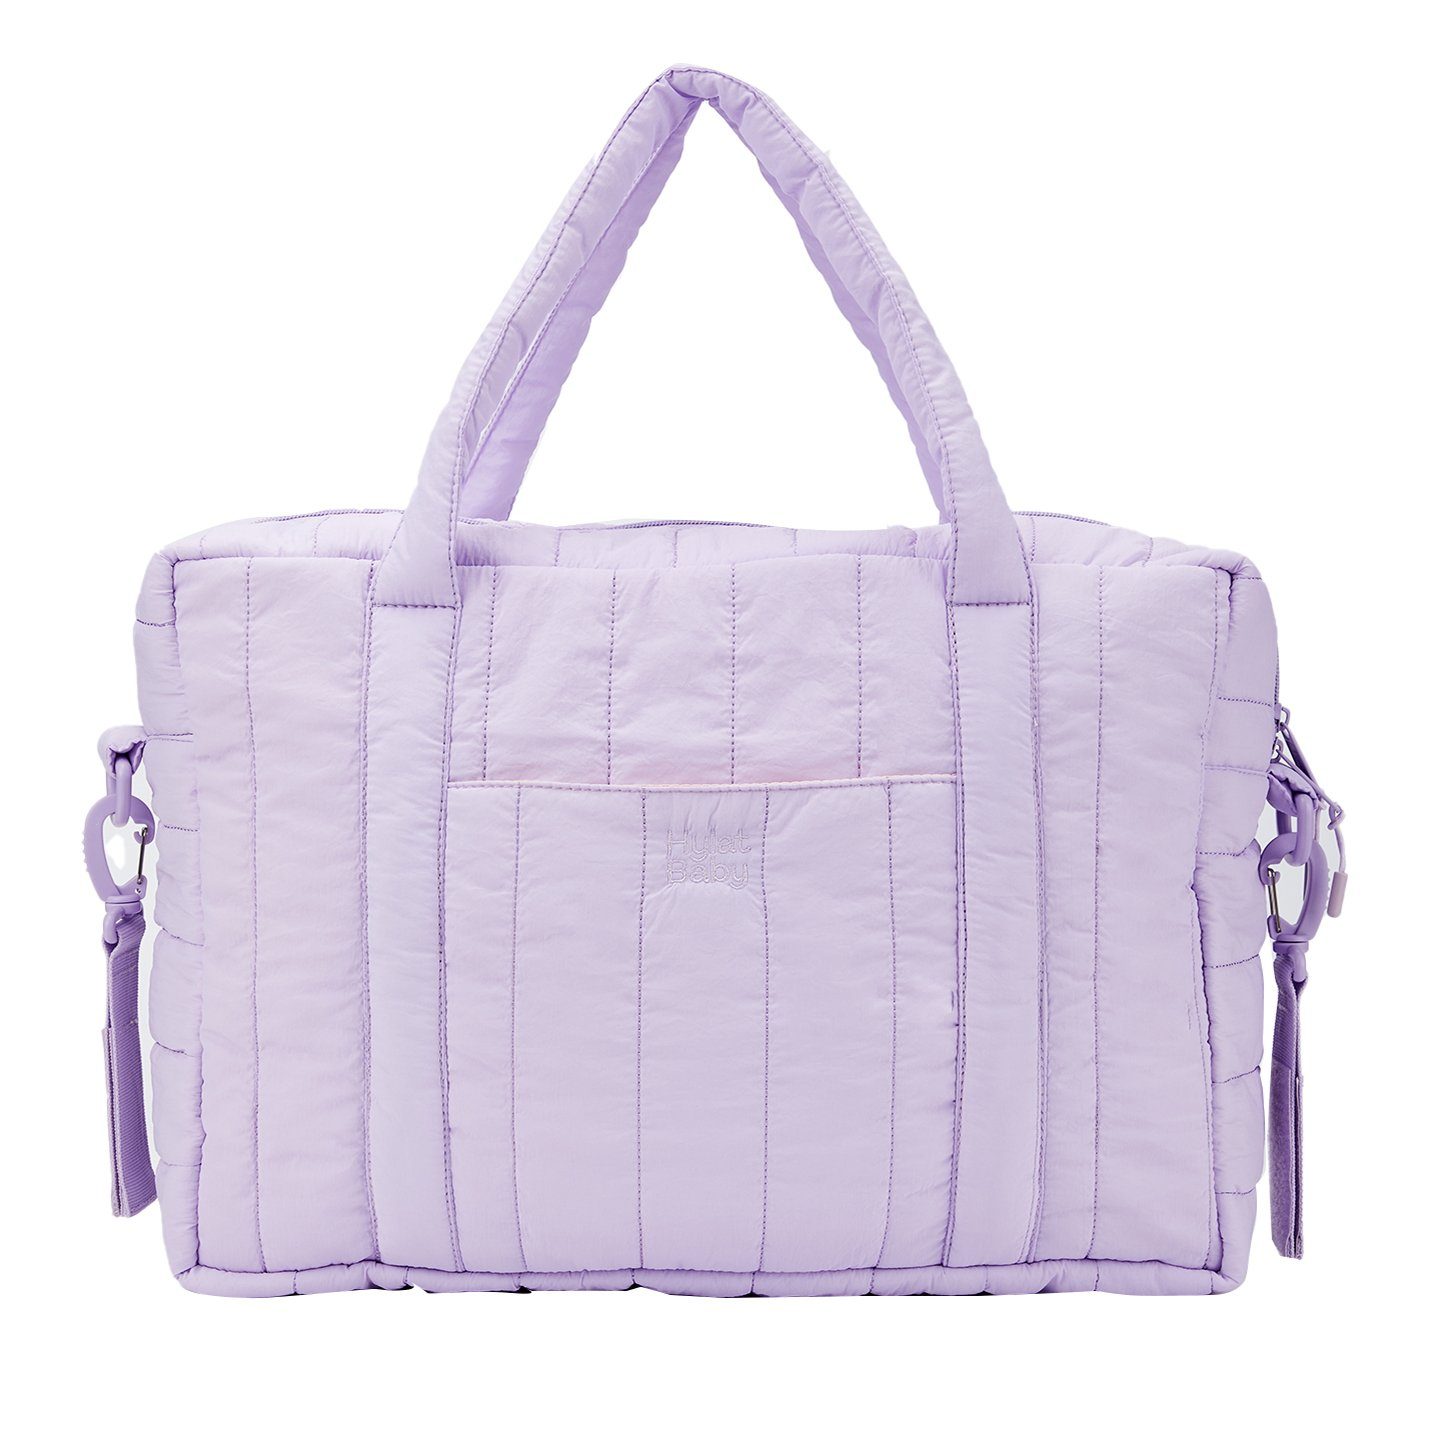 Hylat Baby Schultertasche Produkte für Kinder, Gesteppte Tasche für Windeln und Kindersachen - Violett